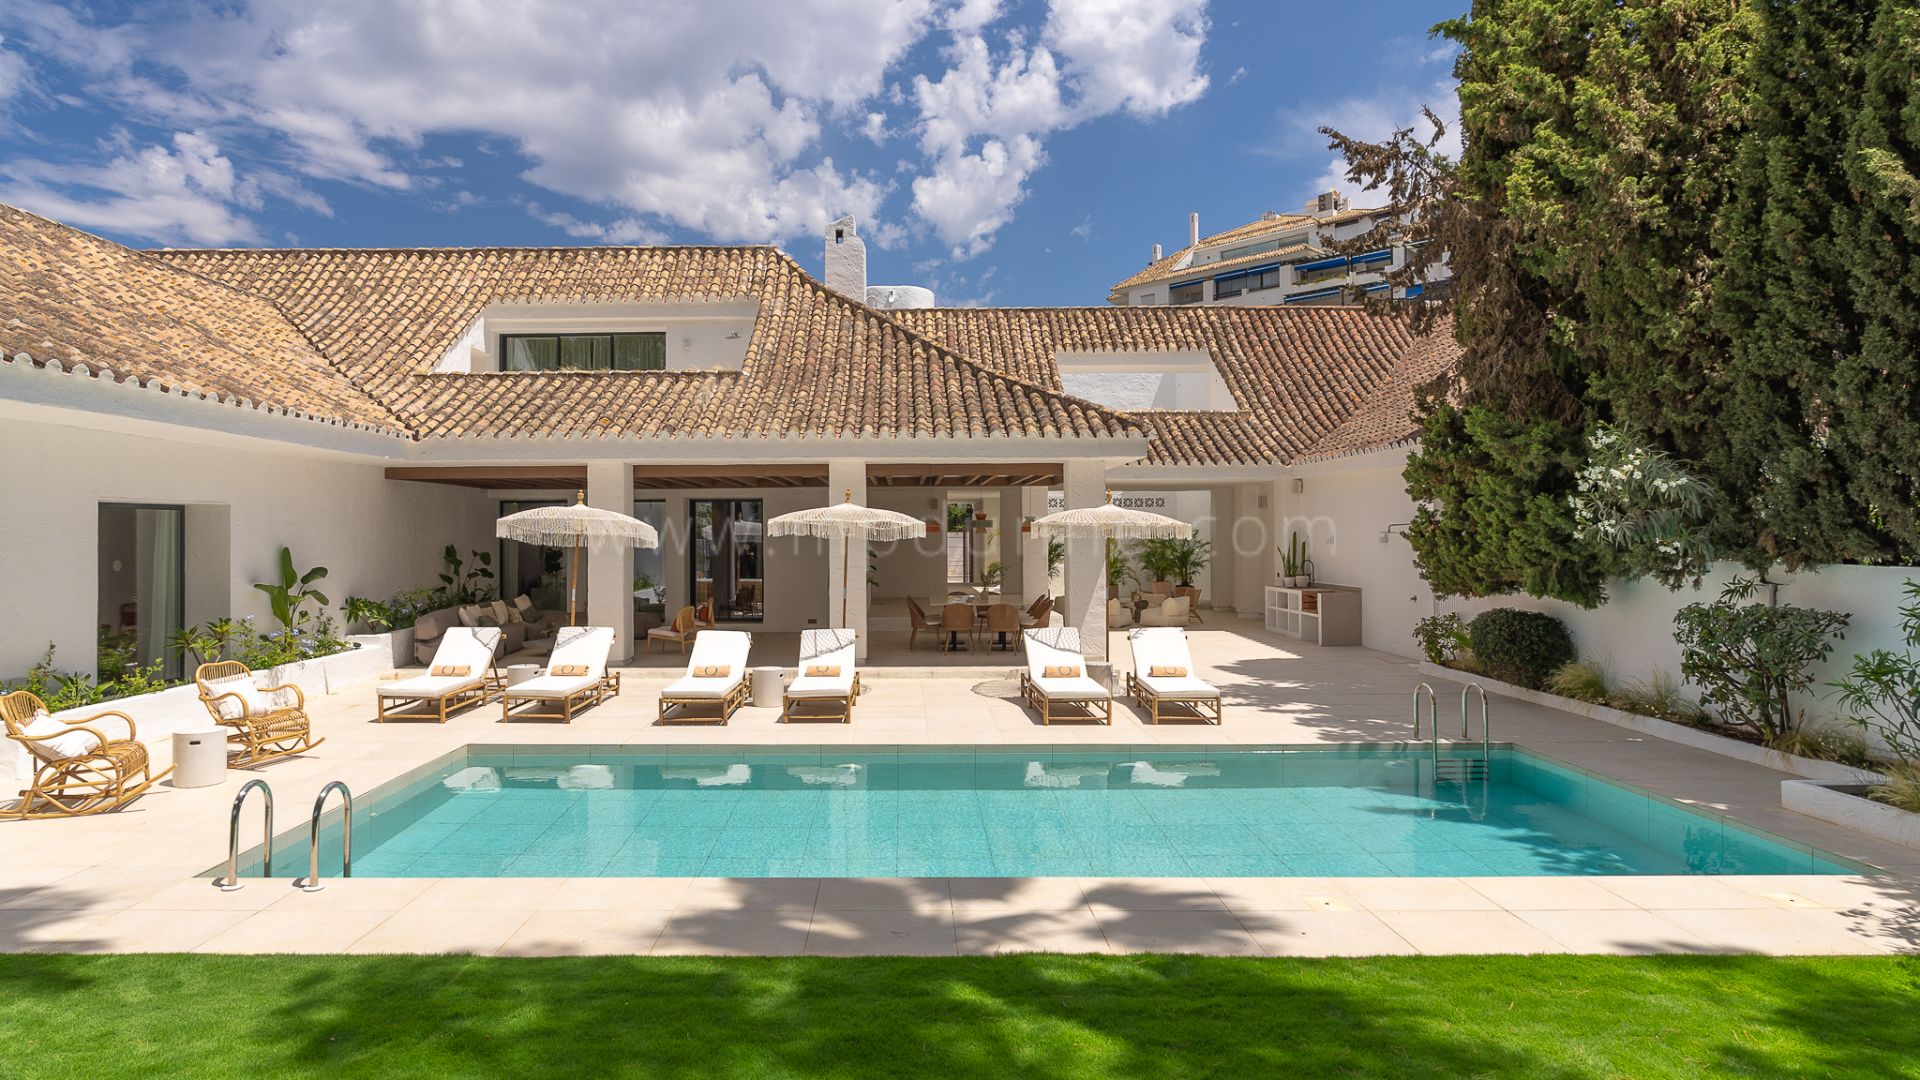 Beachside Villa for holiday rentals near Puerto Banus, Marbella